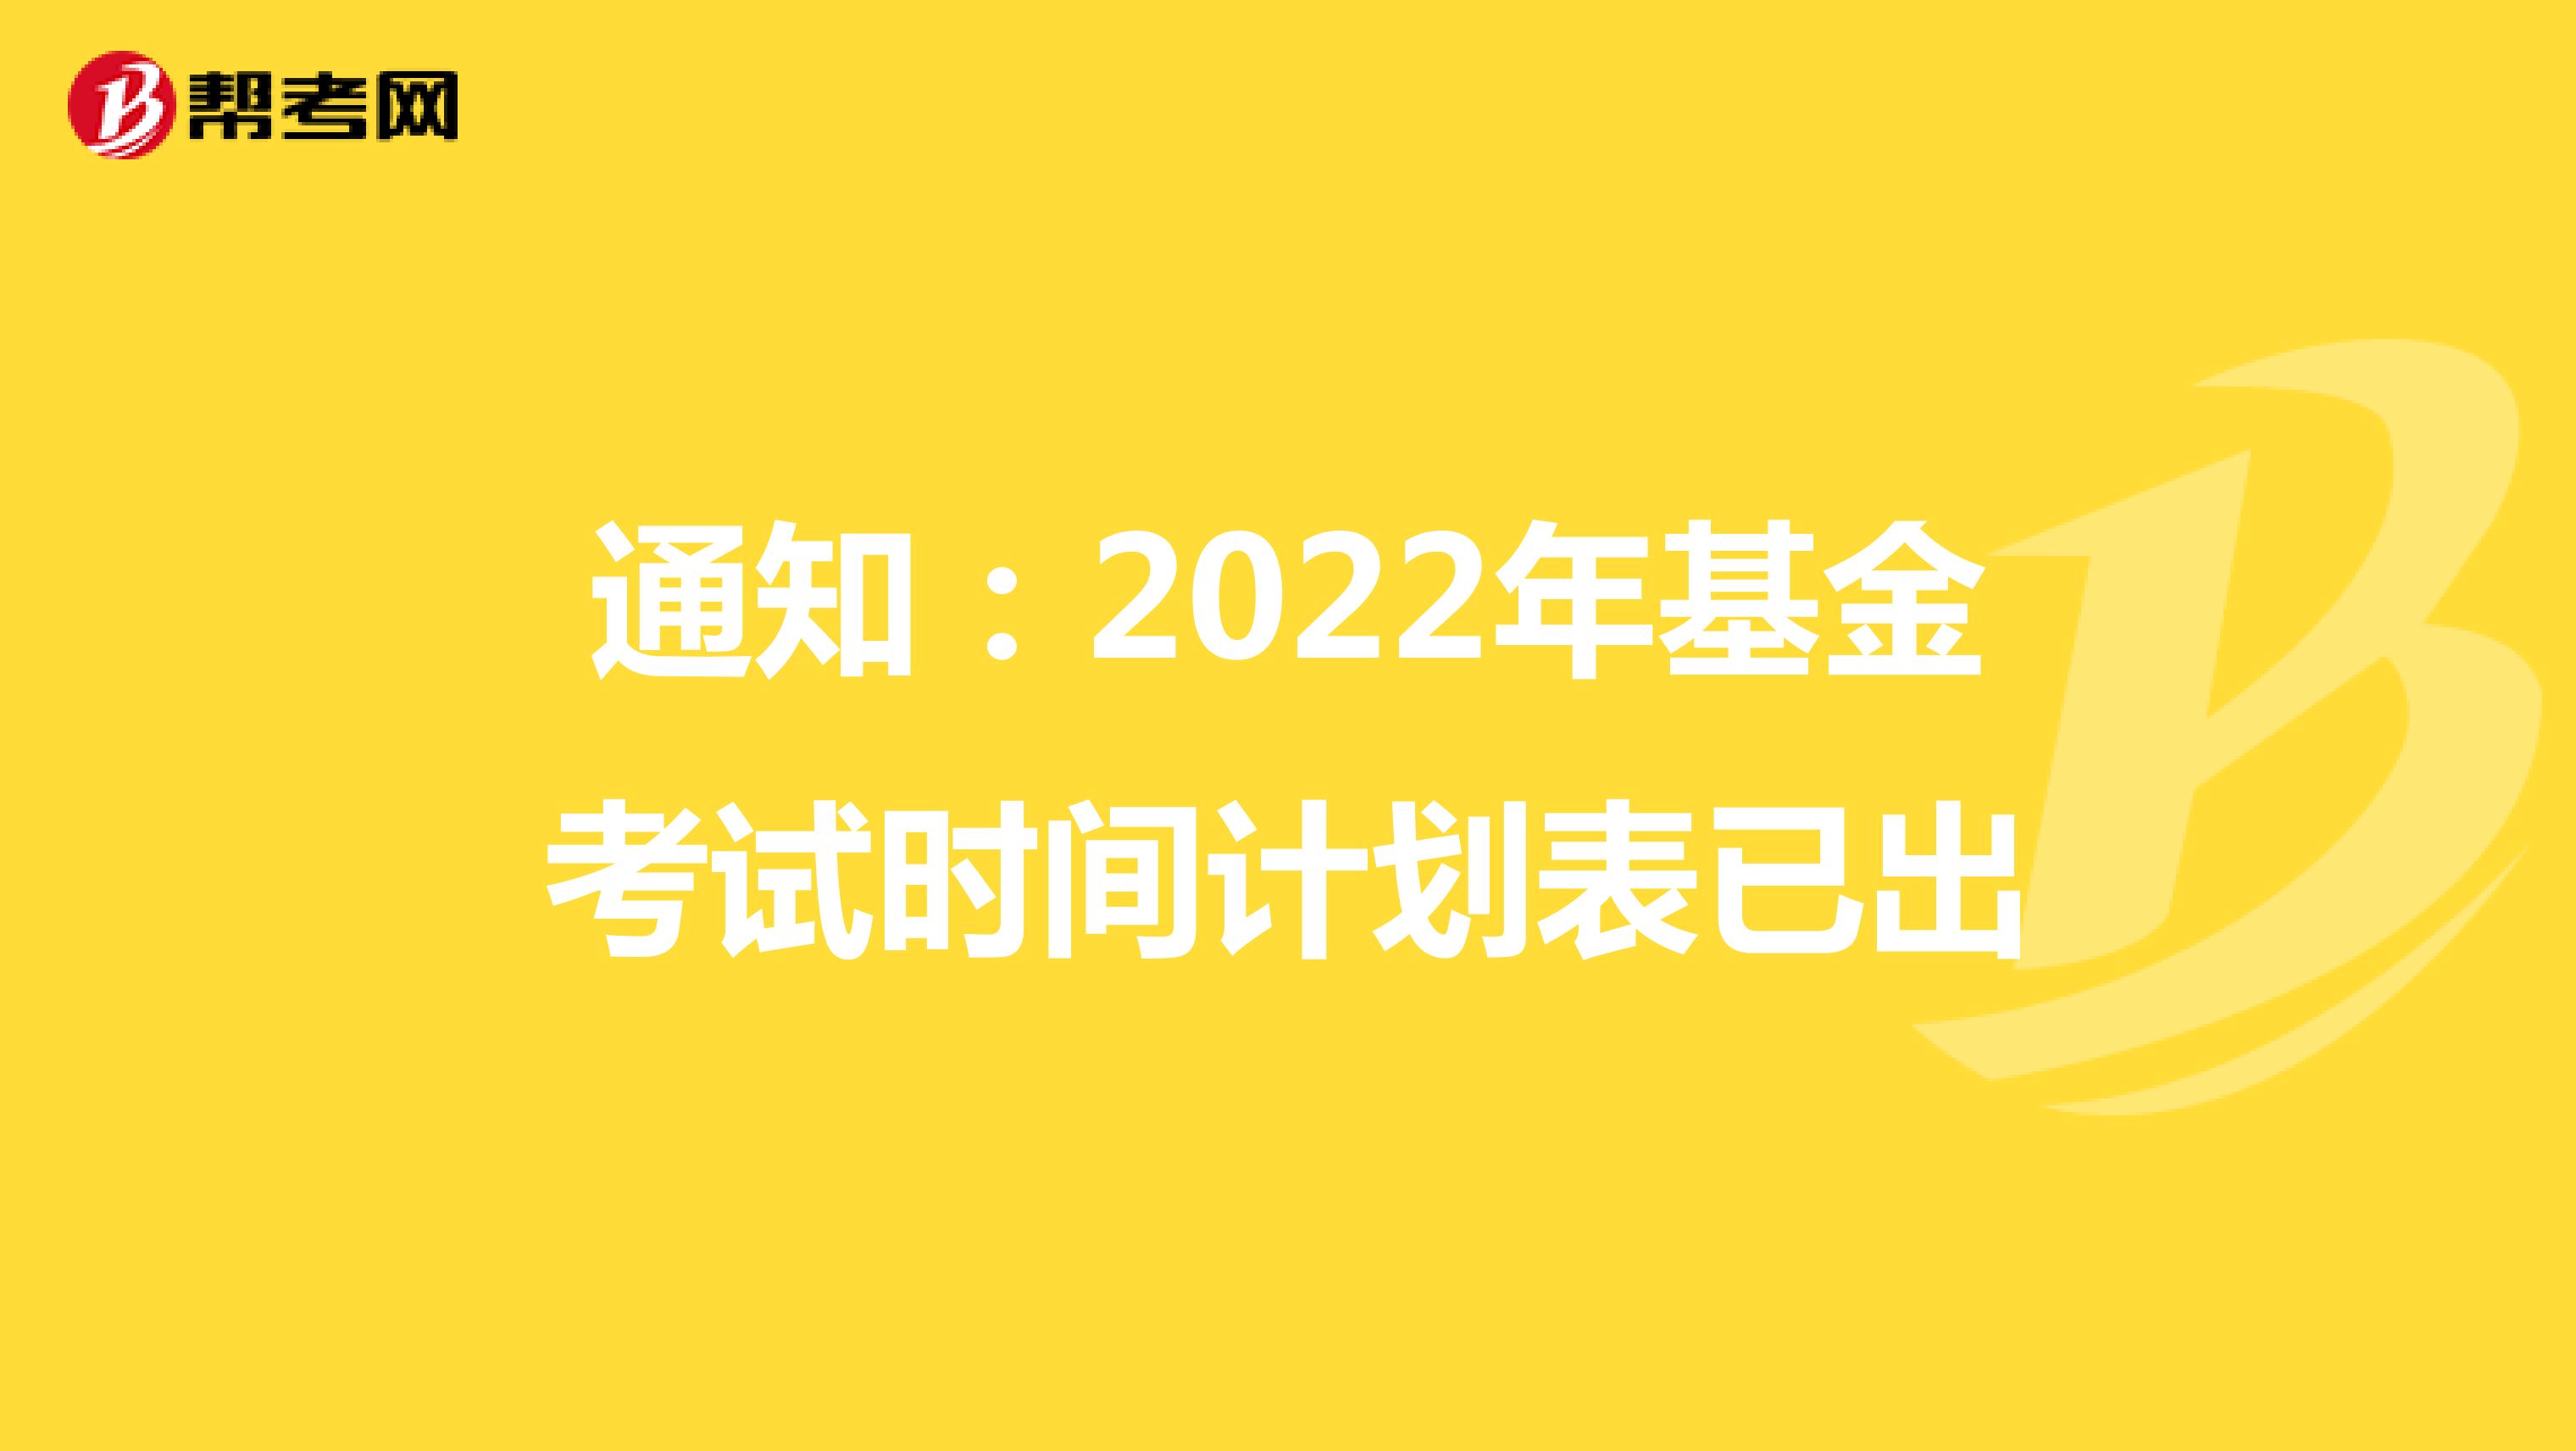 2022年基金考试计划已公布